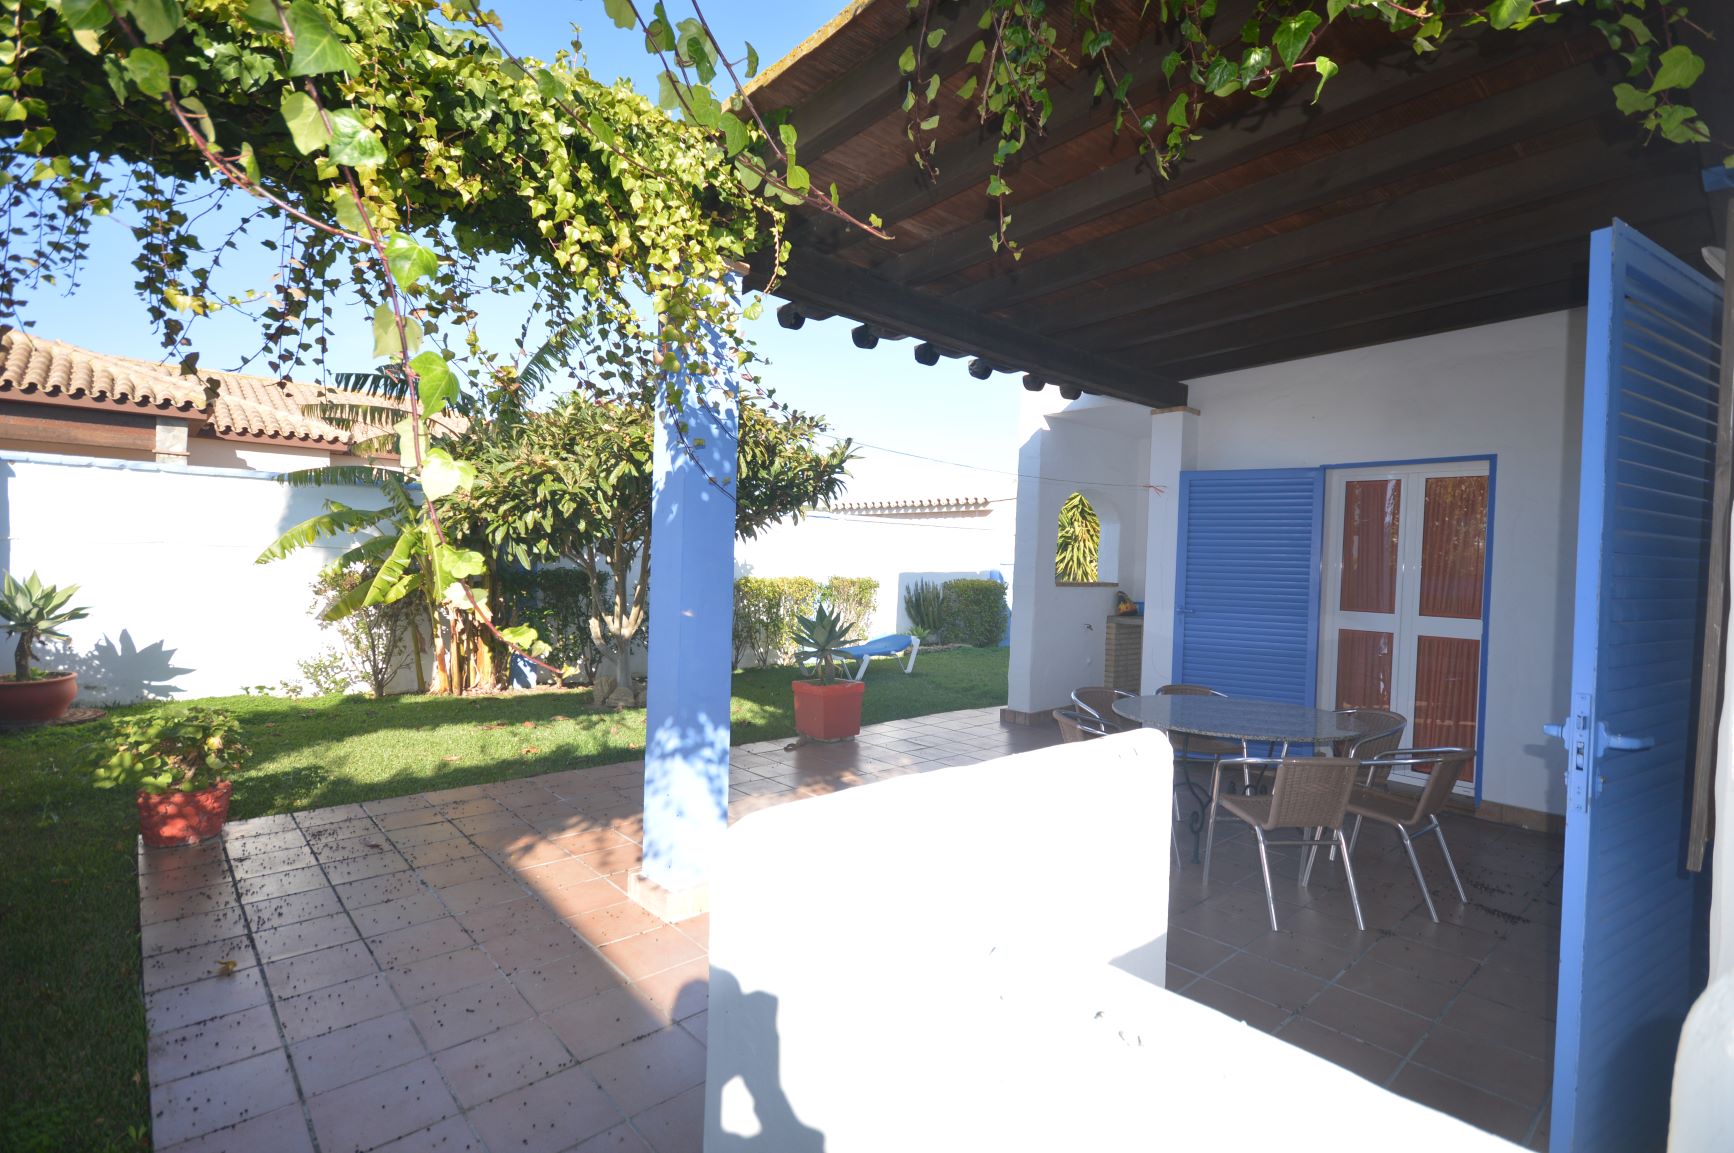 Complejo rural El Arroyo Casa 1 | Casa rural con piscina en pequeño complejo en Conil